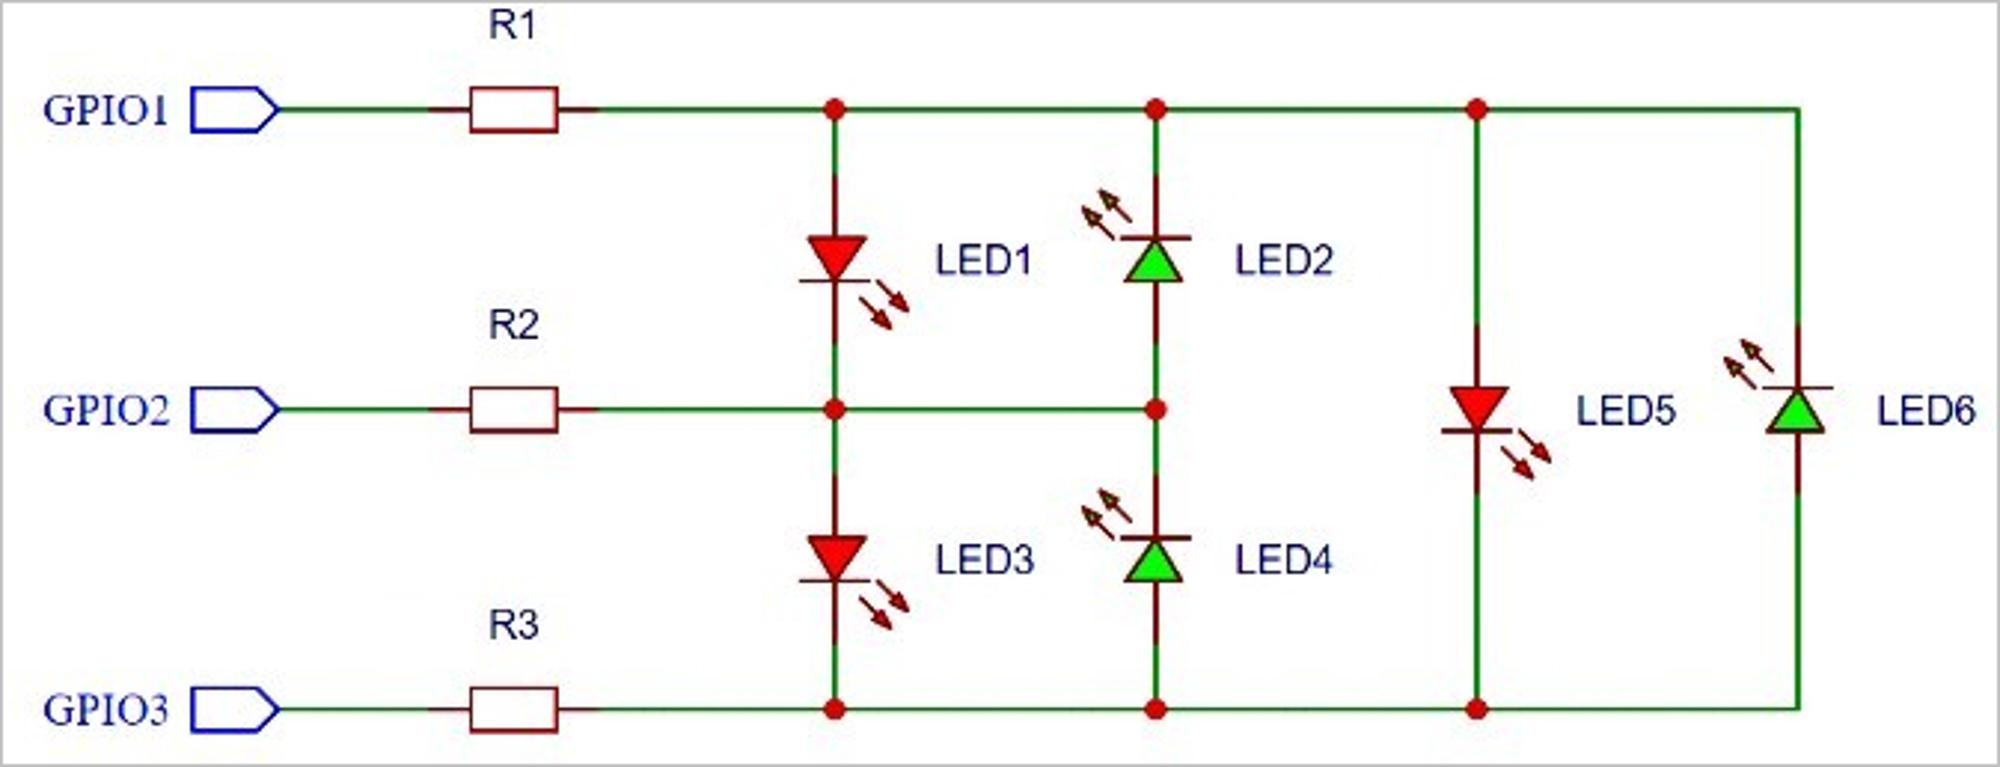 ▲ 三个IO端口控制六个LED单独点亮